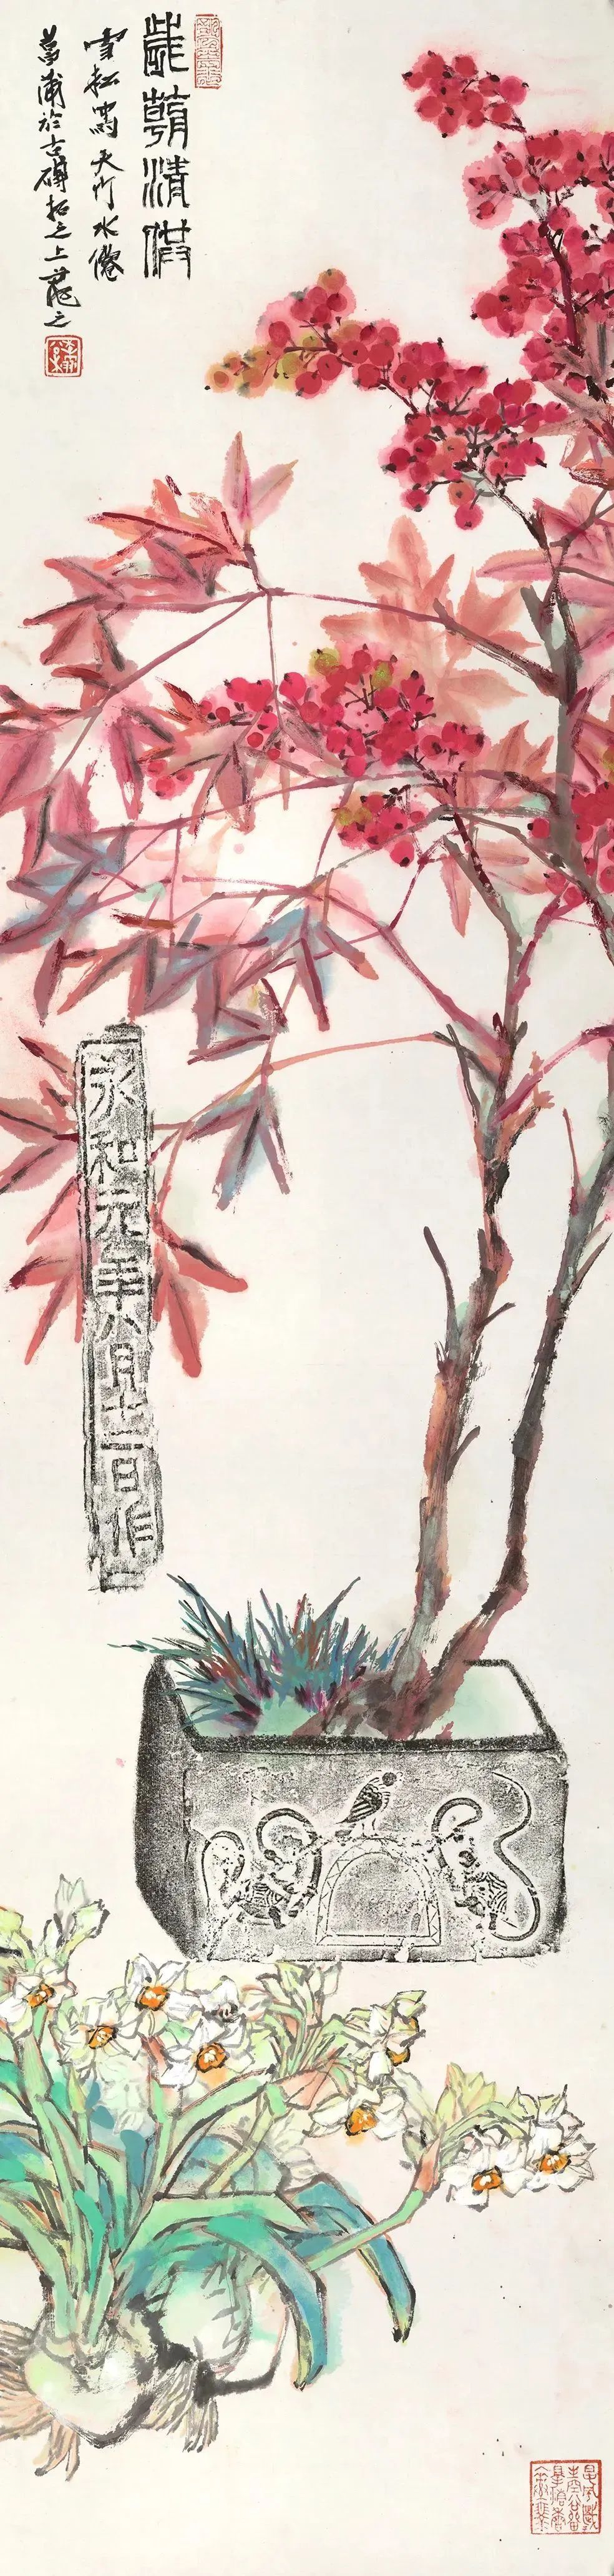 “安心若雪——李雪松、安华平双人展”将于明日在北京开幕